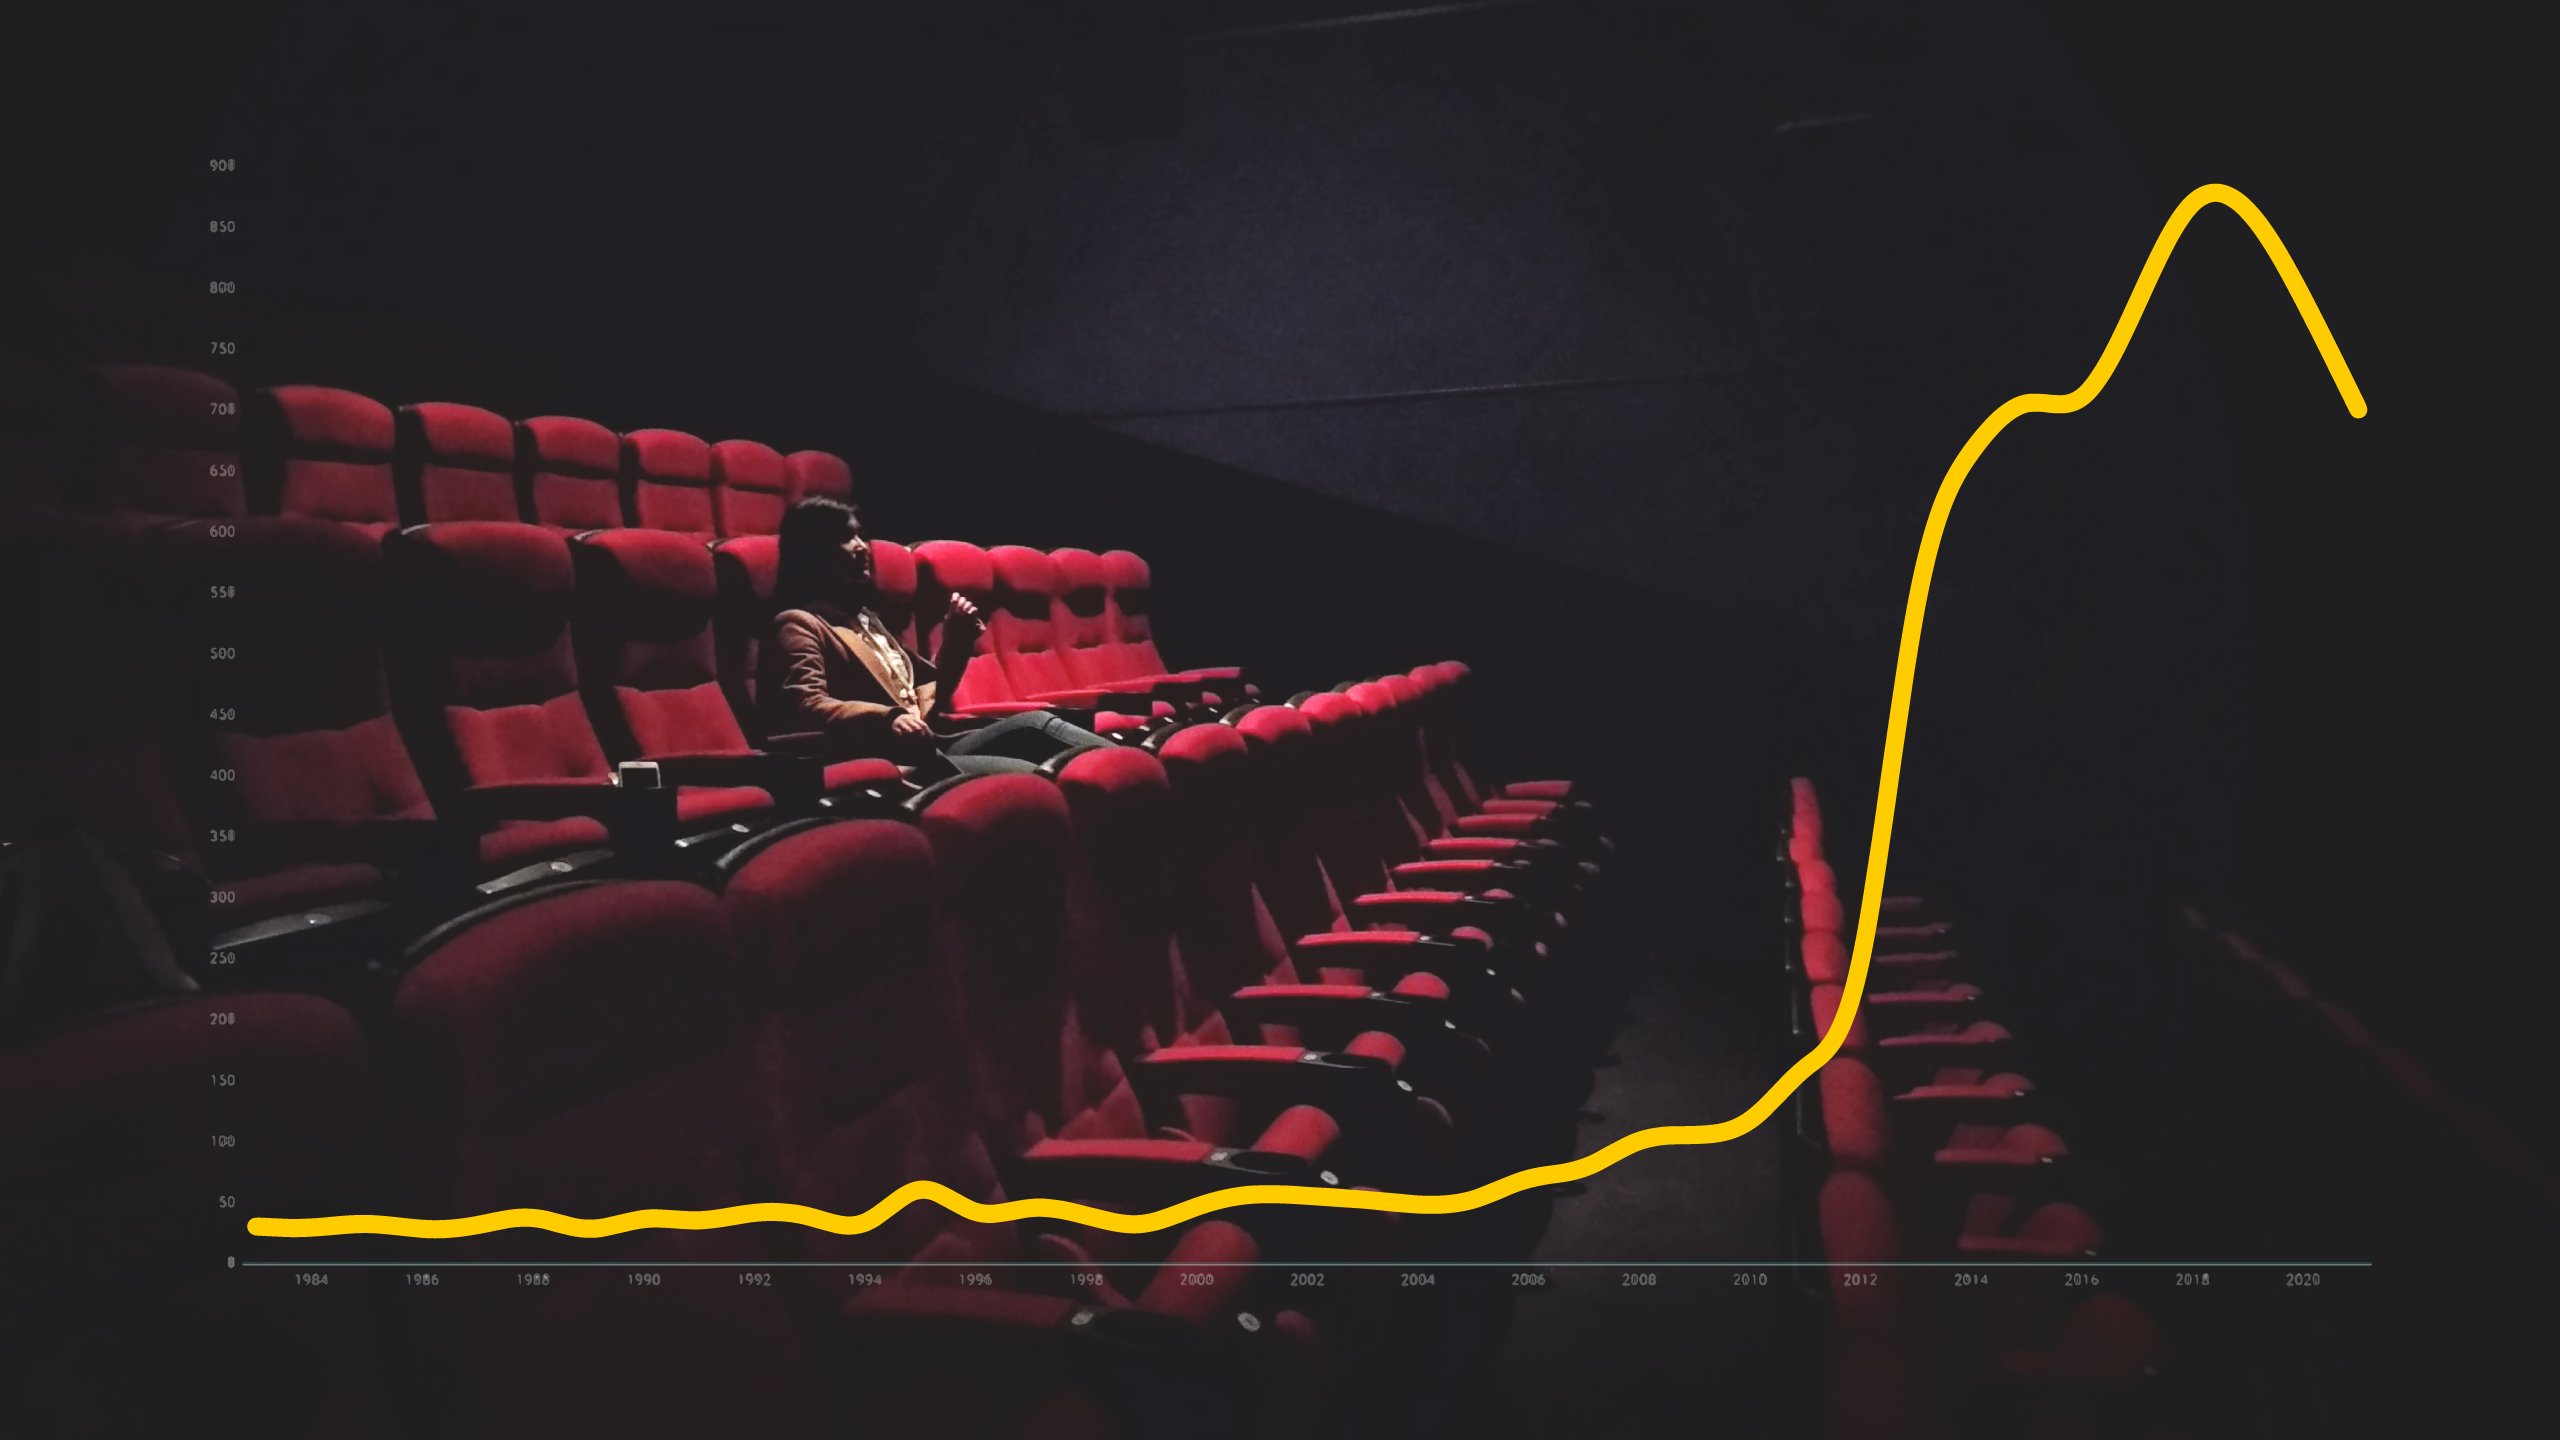 El català al cinema cau un 20% en 4 anys